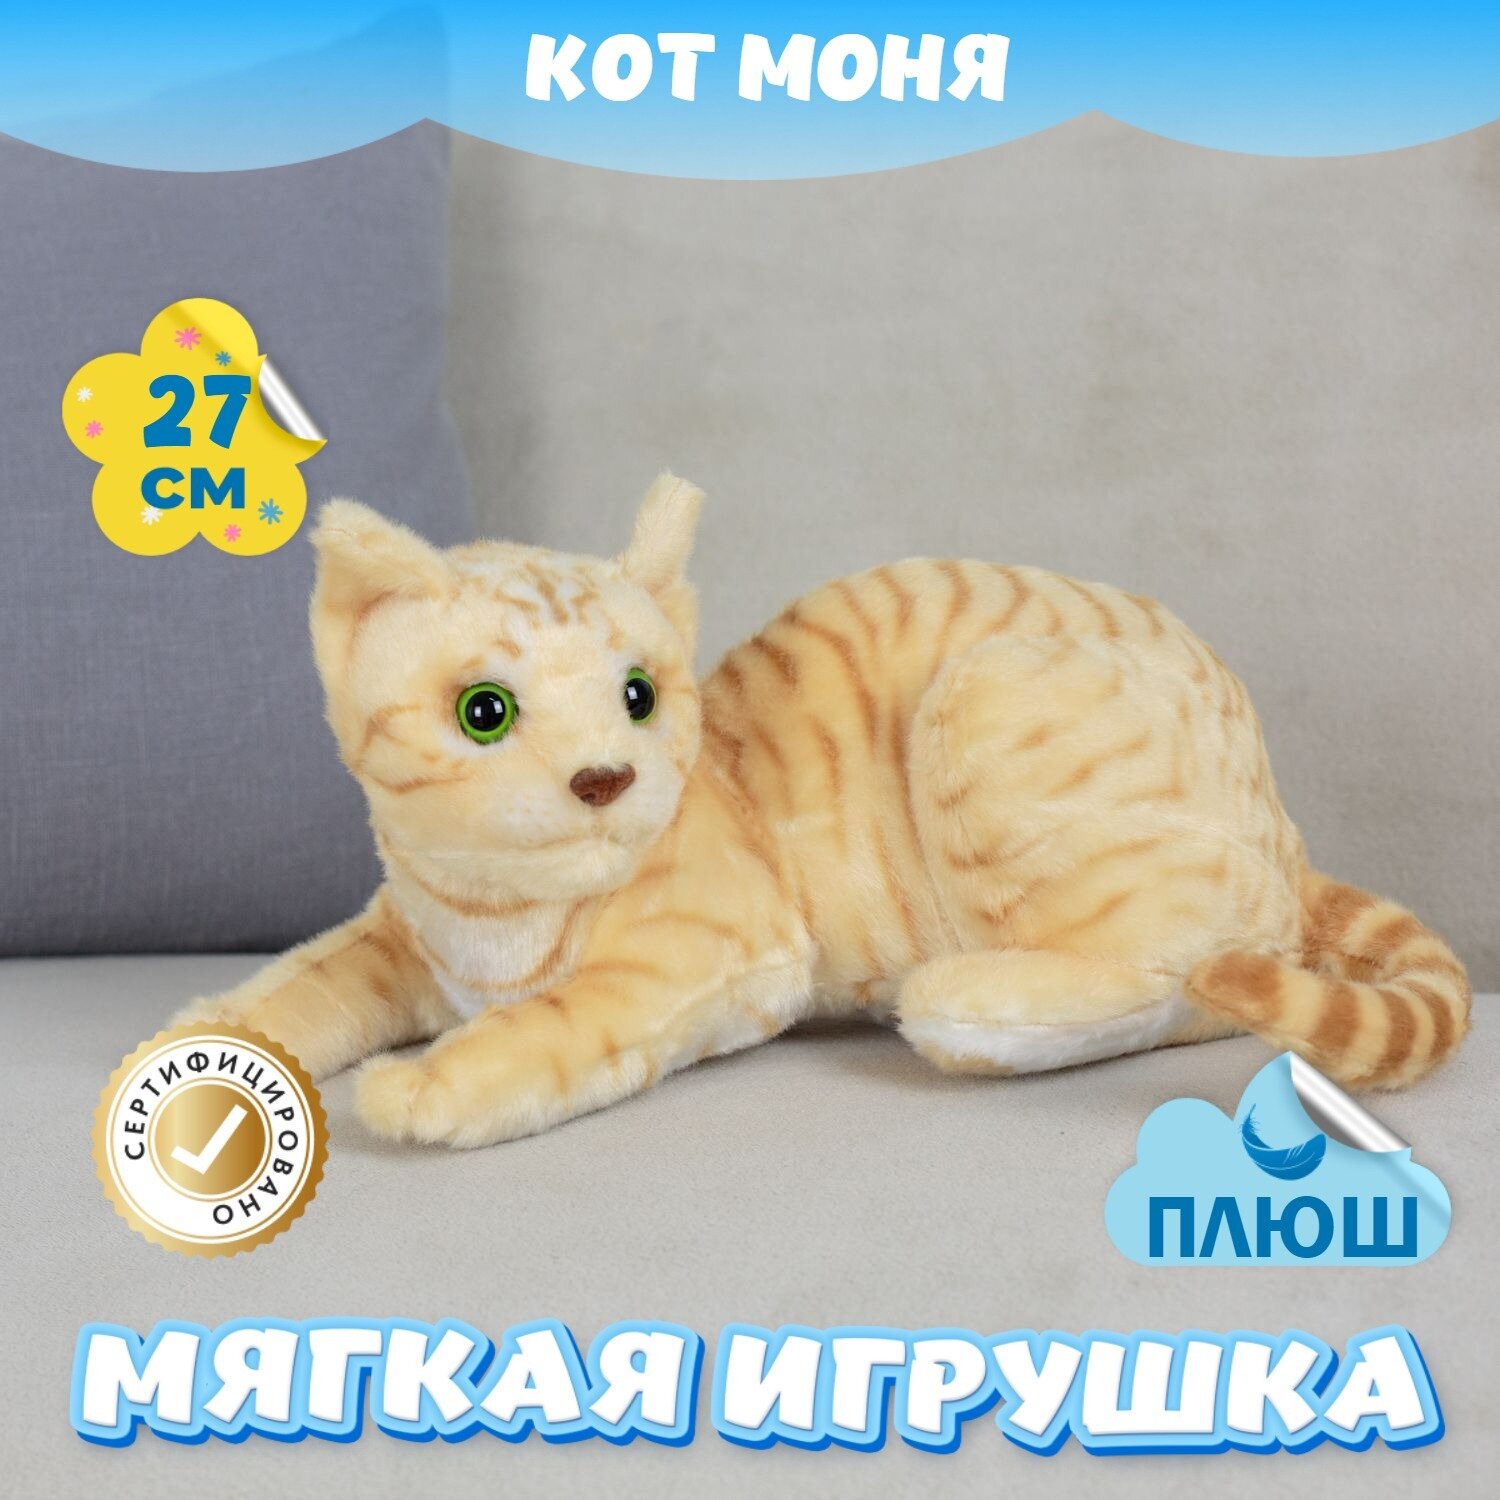 Мягкая игрушка Кот Моня для малышей / Плюшевый Котик для сна KiDWoW желтый 27см